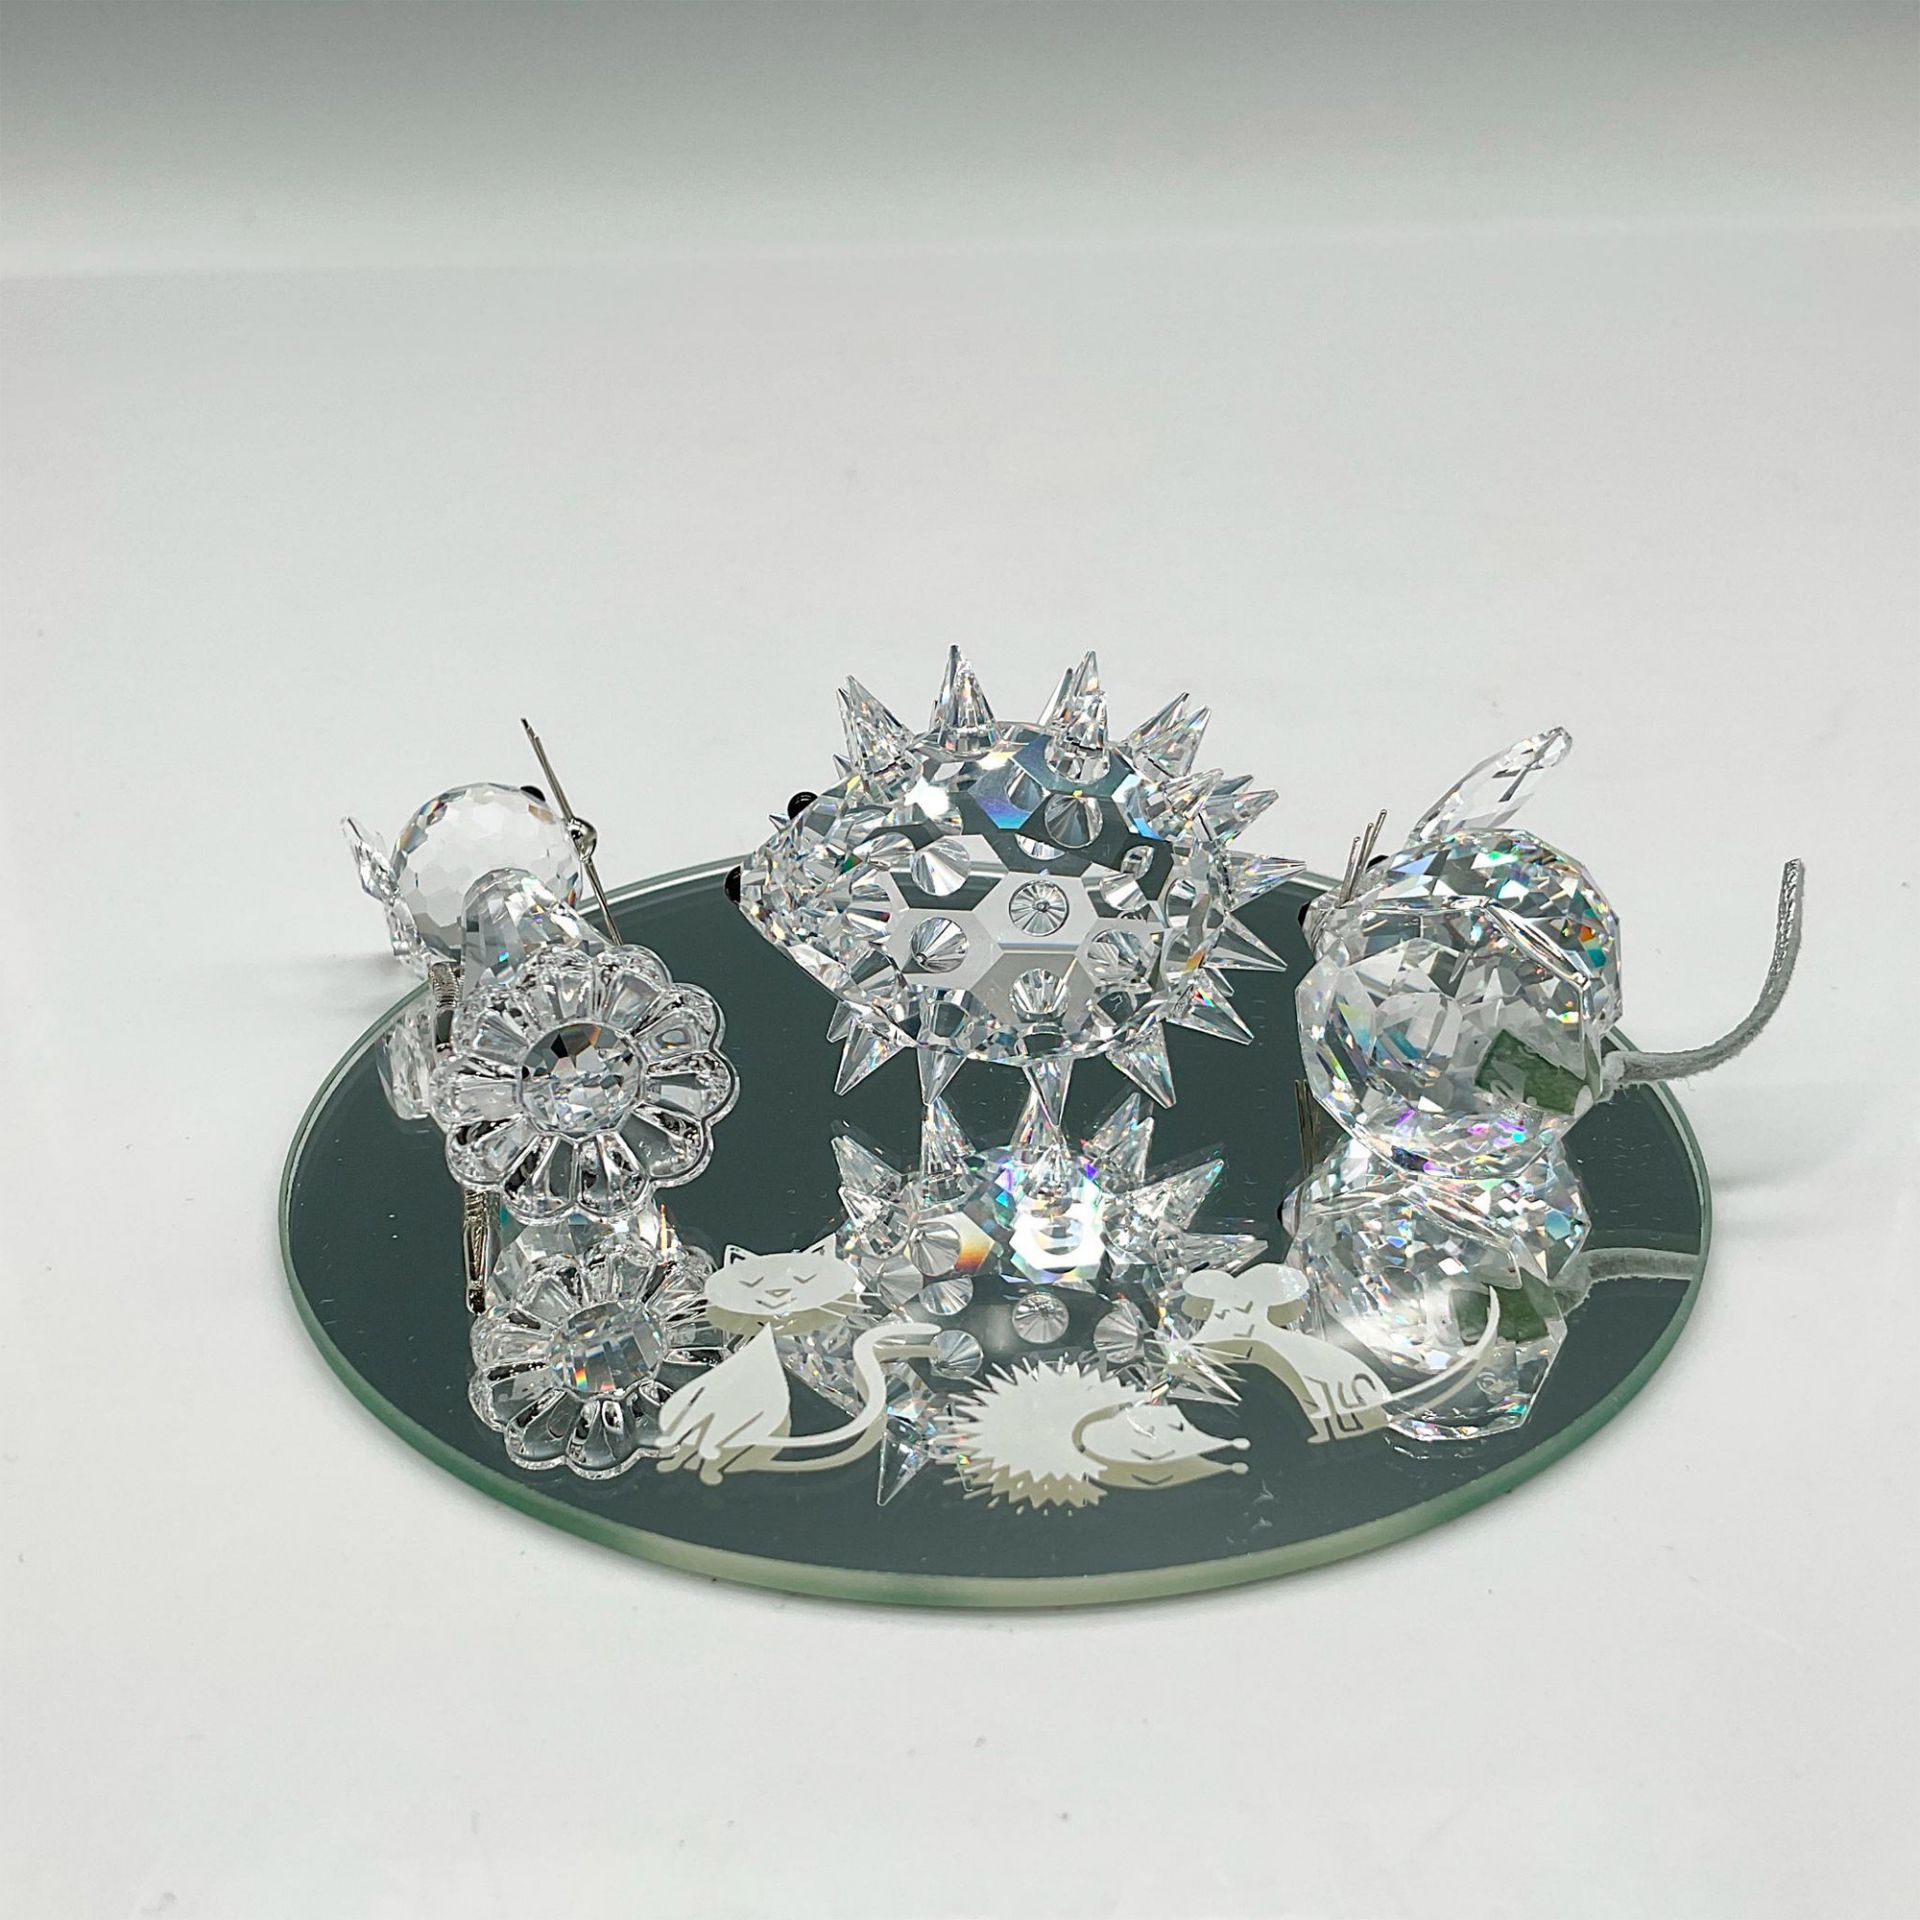 Swarovski Crystal Figurine, Starter Set - Image 3 of 4